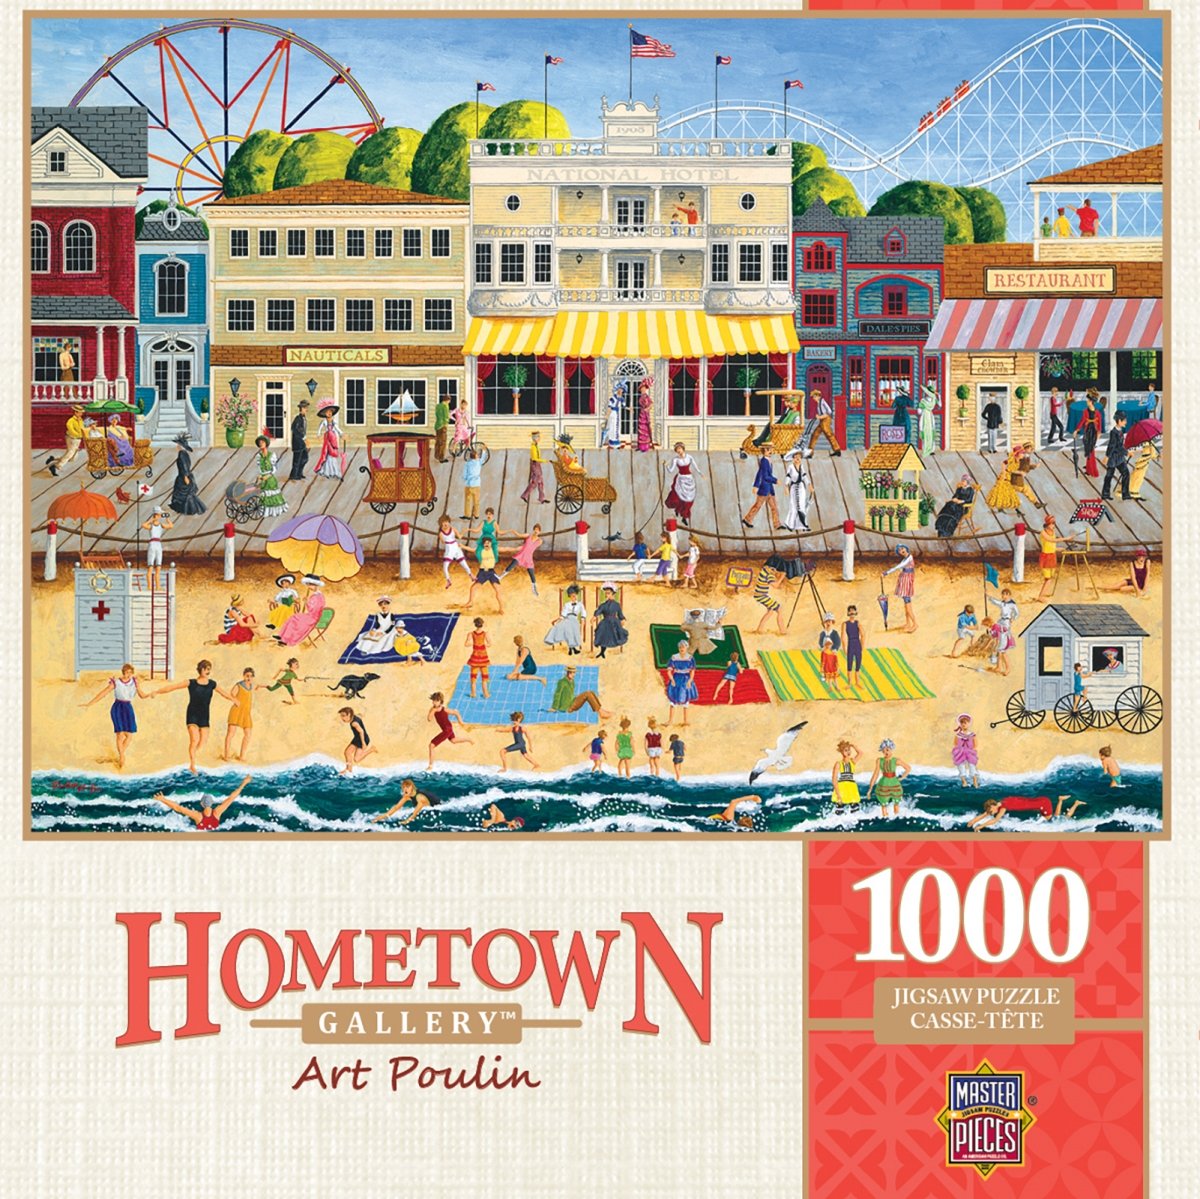 71627 19.25 X 26.75 In. Art Poulin Hometown Gallery On The Boardwalk Jigsaw Puzzle - 1000 Piece